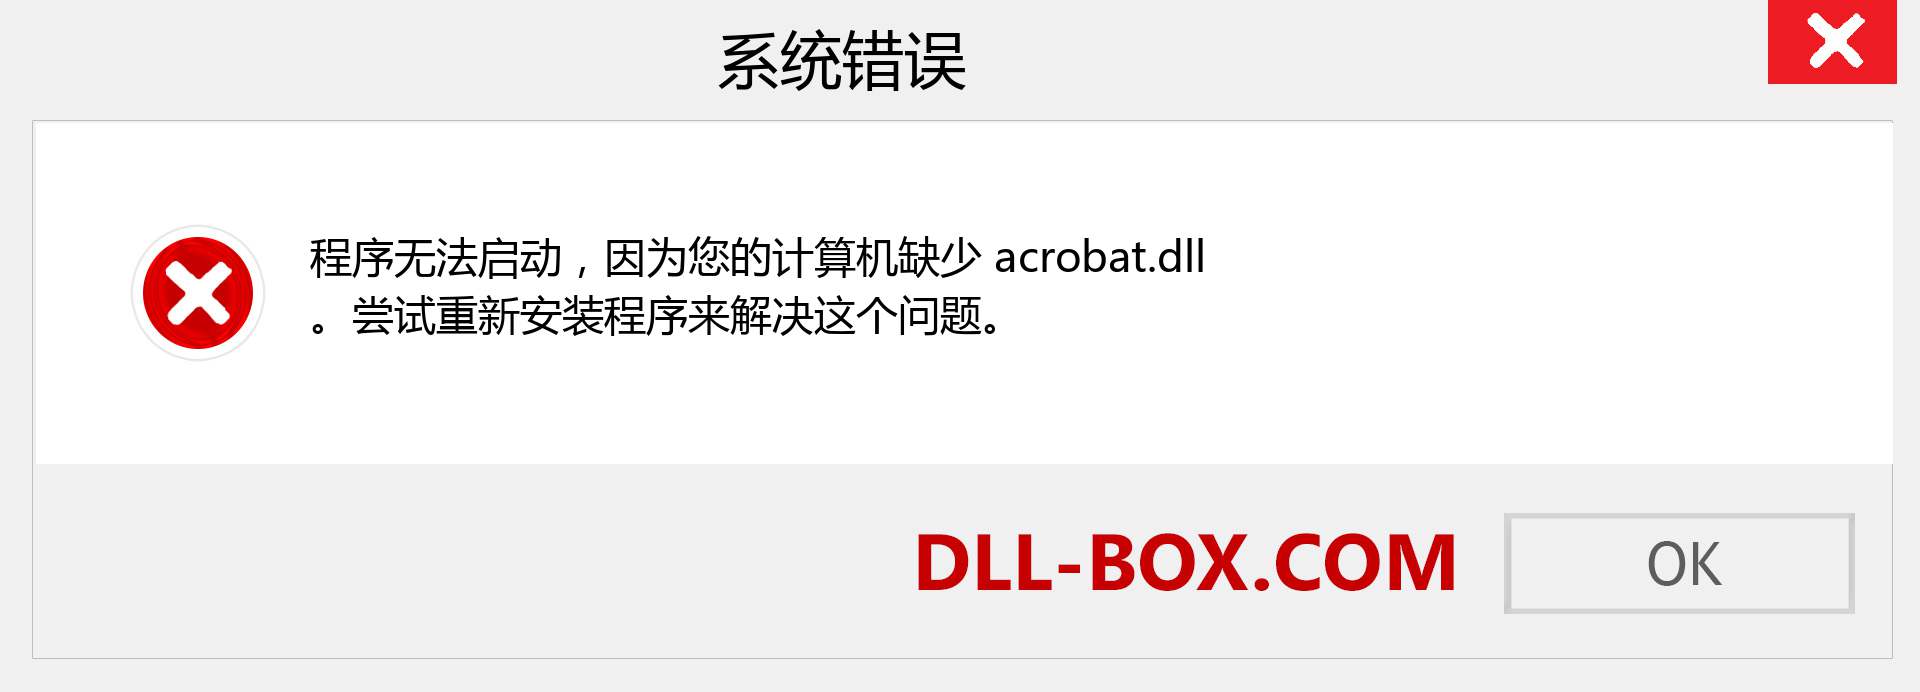 acrobat.dll 文件丢失？。 适用于 Windows 7、8、10 的下载 - 修复 Windows、照片、图像上的 acrobat dll 丢失错误